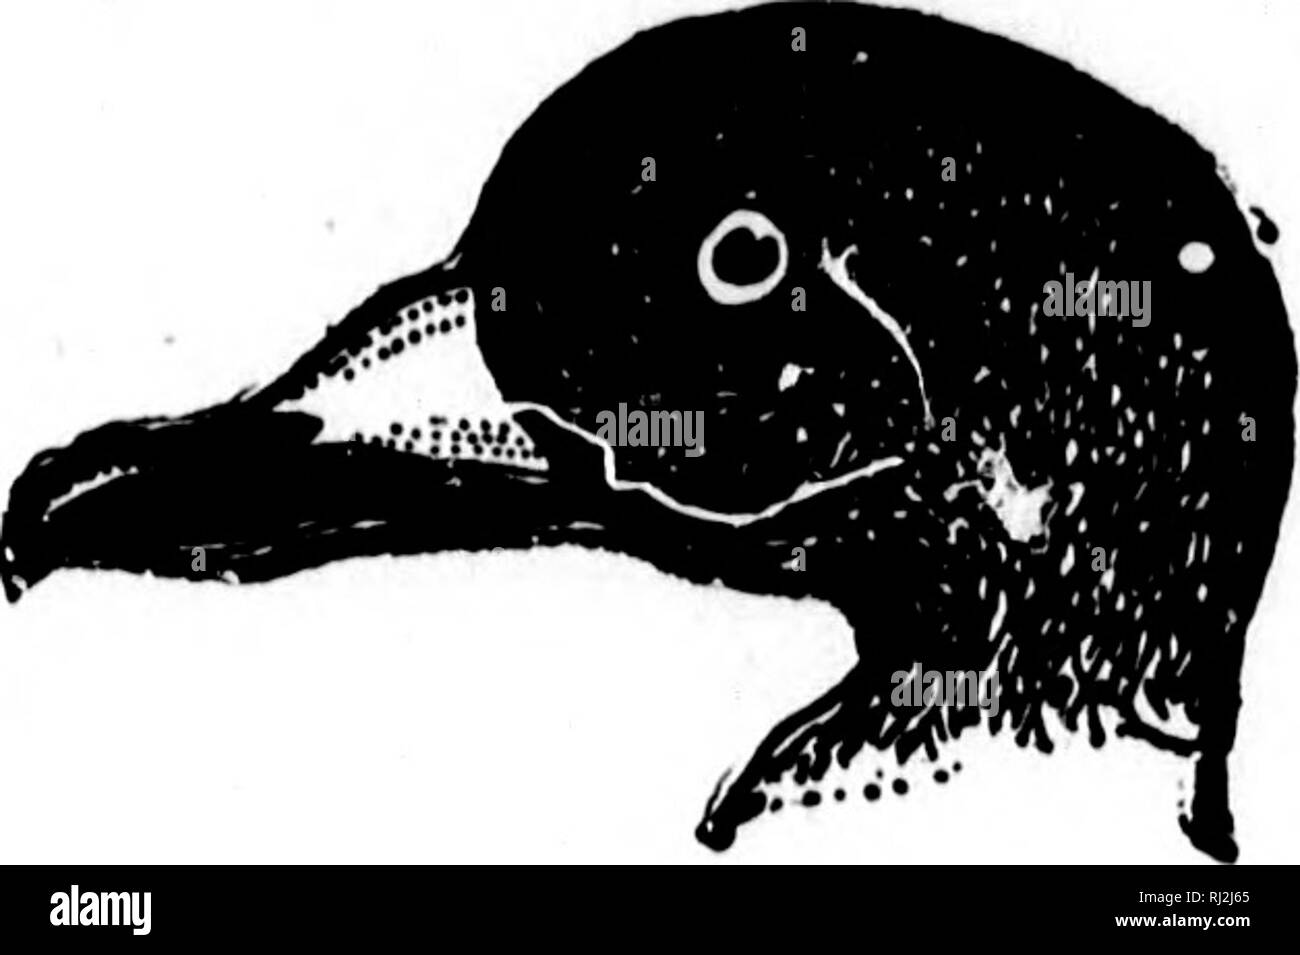 . Nester und Eier der nordamerikanische Vögel [microform]. Ornithologie; Vögel; Ornithologie; Oiseaux. 94 NBBT 8 UND 8 DER BQG, 1 ^"^^. 163. Amerikanische Scoter. Einige dieser Arten sind sagte in Labrador zu züchten, da sie in den nächsten Do-Haube von Sümpfen und Teich^ im Innenraum, gegen Mitternacht. In der Hudson Bay Region der amerikanischen Scoter Nester im Juni und Juli. Es hat auf Inseln an der Küste von Alaska und an der Mündung des Yukon im Juni gefunden. Die scoter Nester ähnlich der Sider, auf dem Boden, in der Nähe von Wasser; das verwendete Material grobes Gras, Federn und Daunen. Die Nester werden oft gut Isecr Stockfoto